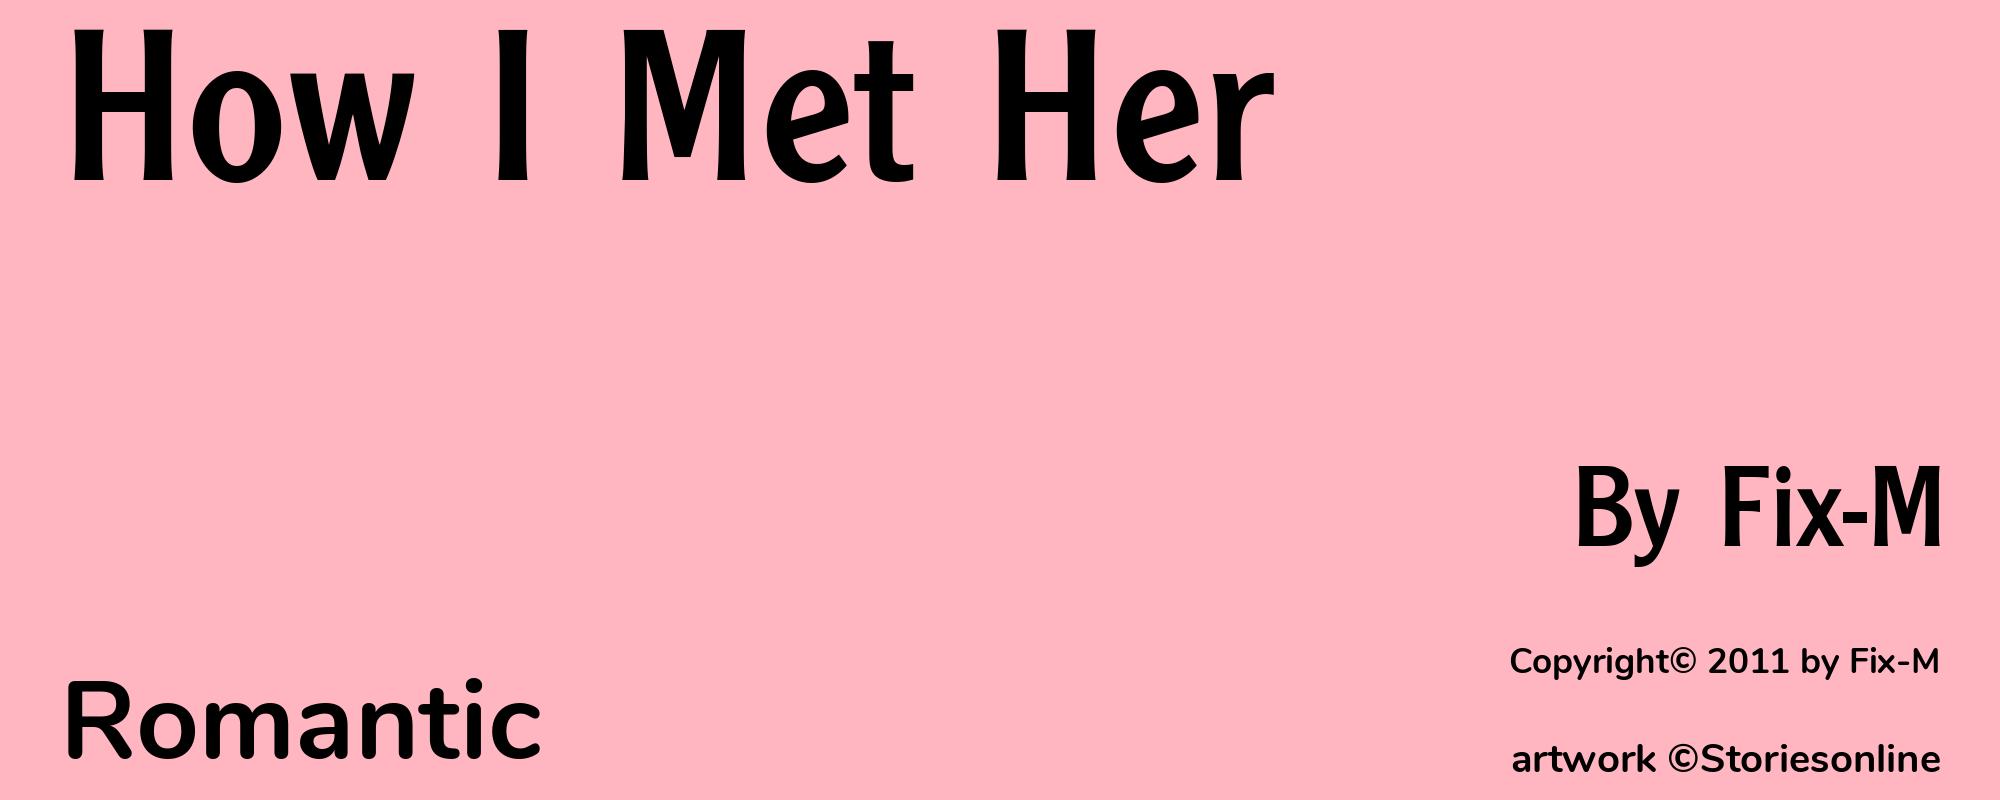 How I Met Her - Cover